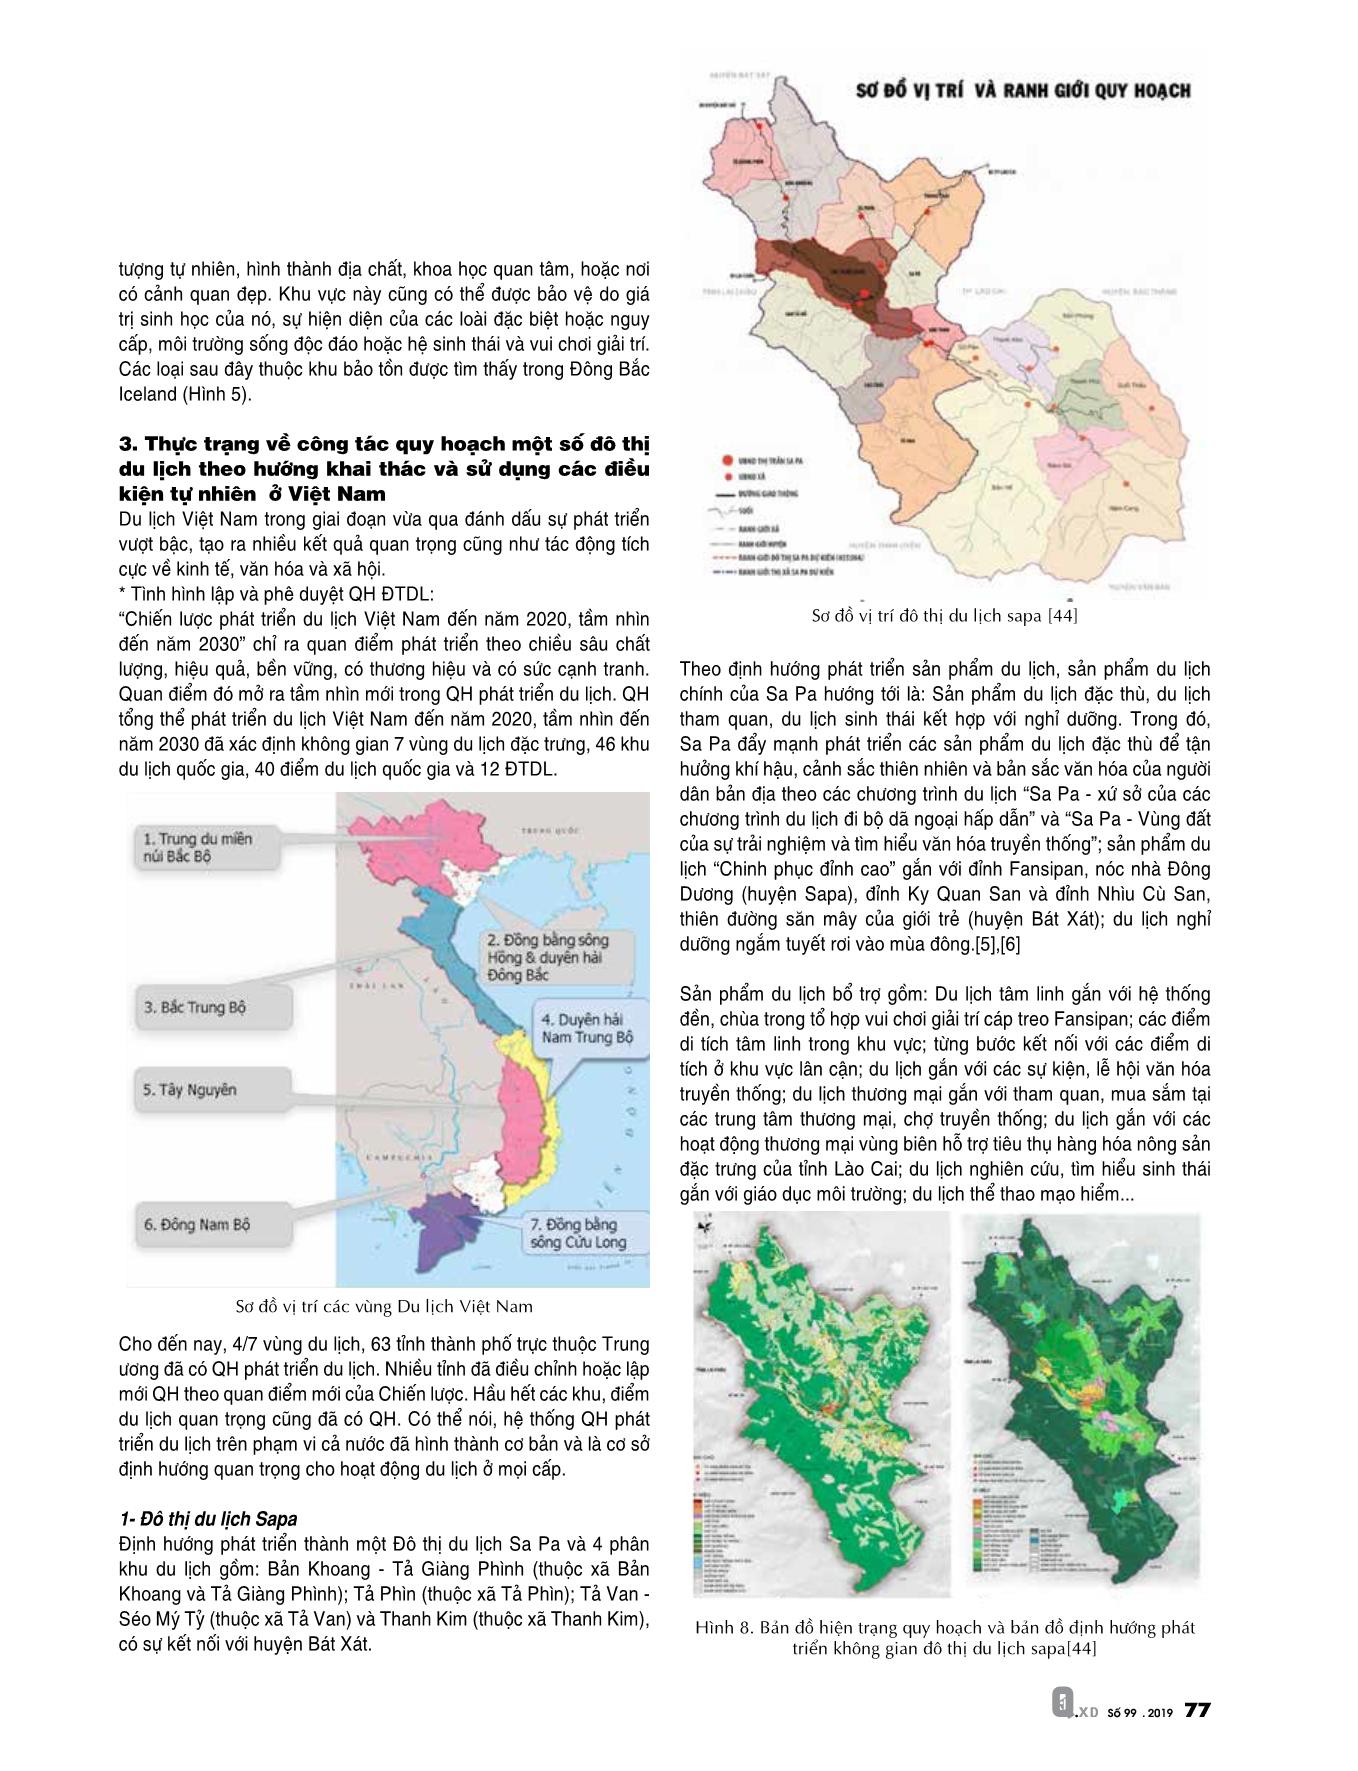 Nhận diện và khai thác hợp lý các điều kiện tự nhiên trong quy hoạch đô thị du lịch Việt Nam trang 4